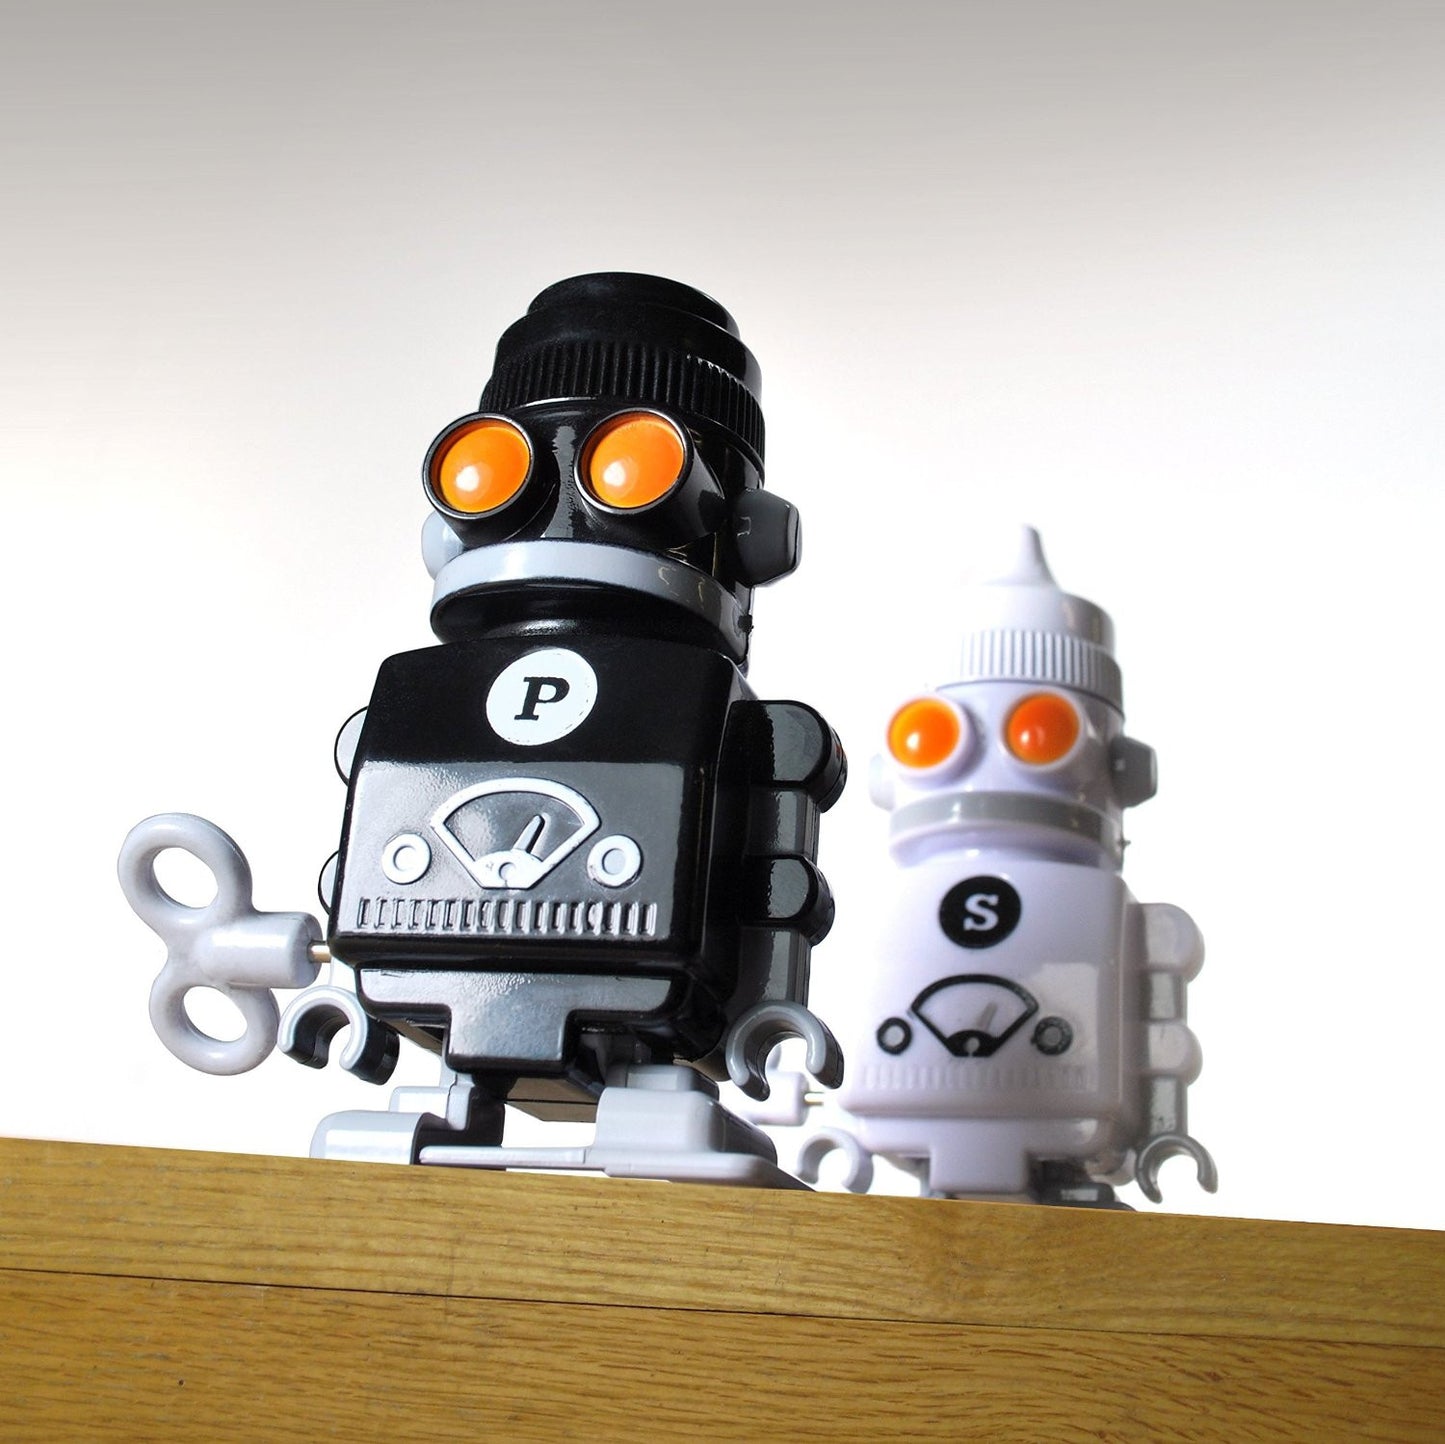 Robot Salt & Pepper Shakers - OddGifts.com